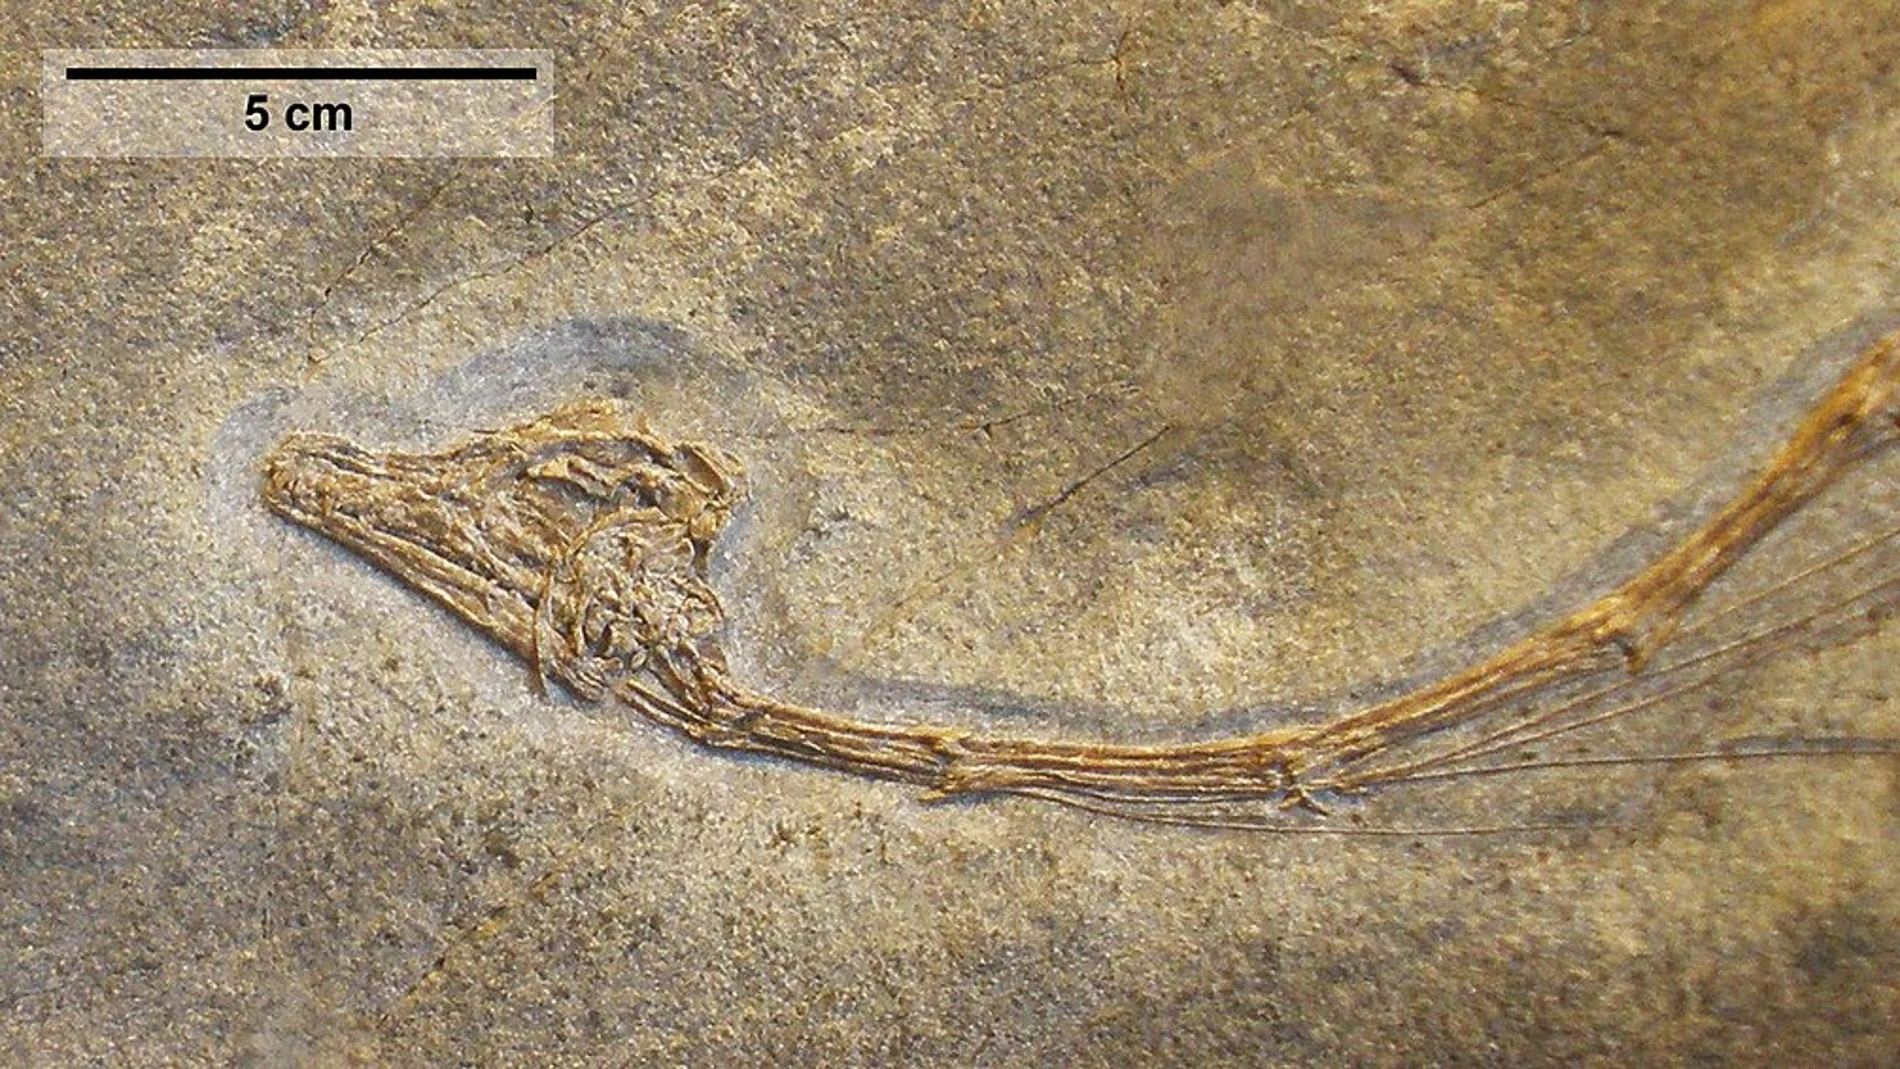 Un cráneo y siete vértebras cervicales distales en articulación, del holotipo y único espécimen conocido de Tanystropheus meridensis expuesto en el Paläontologisches Museum Zürich.